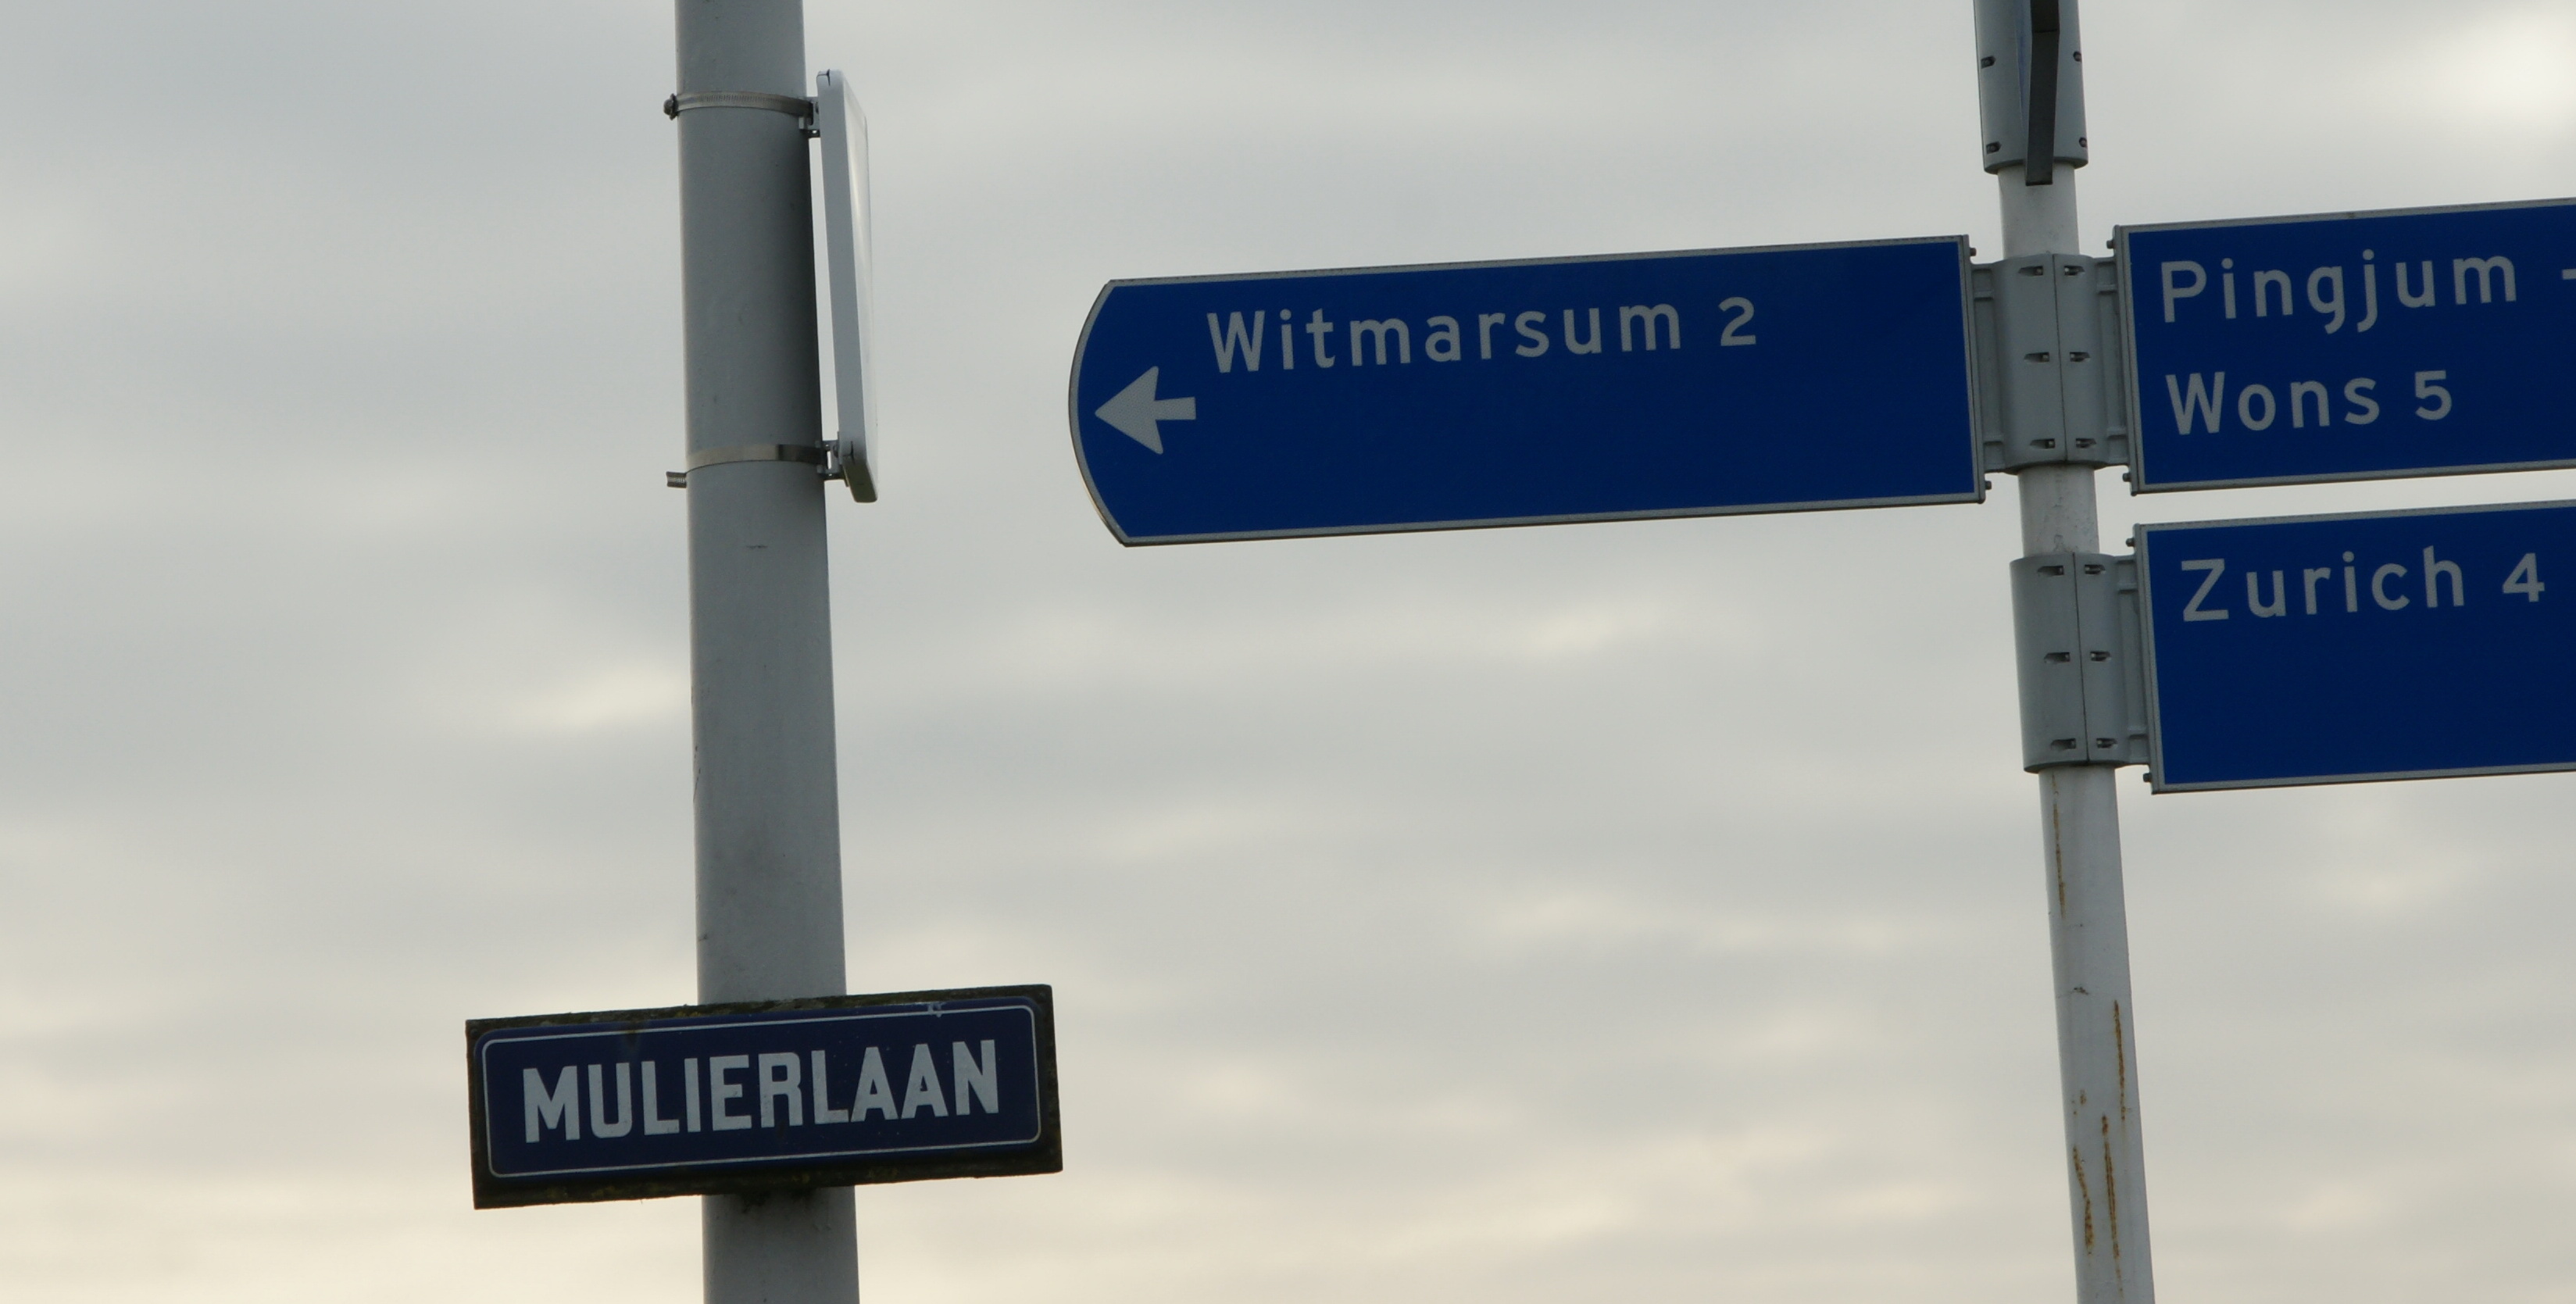 Mulierlaan in Witmarsum